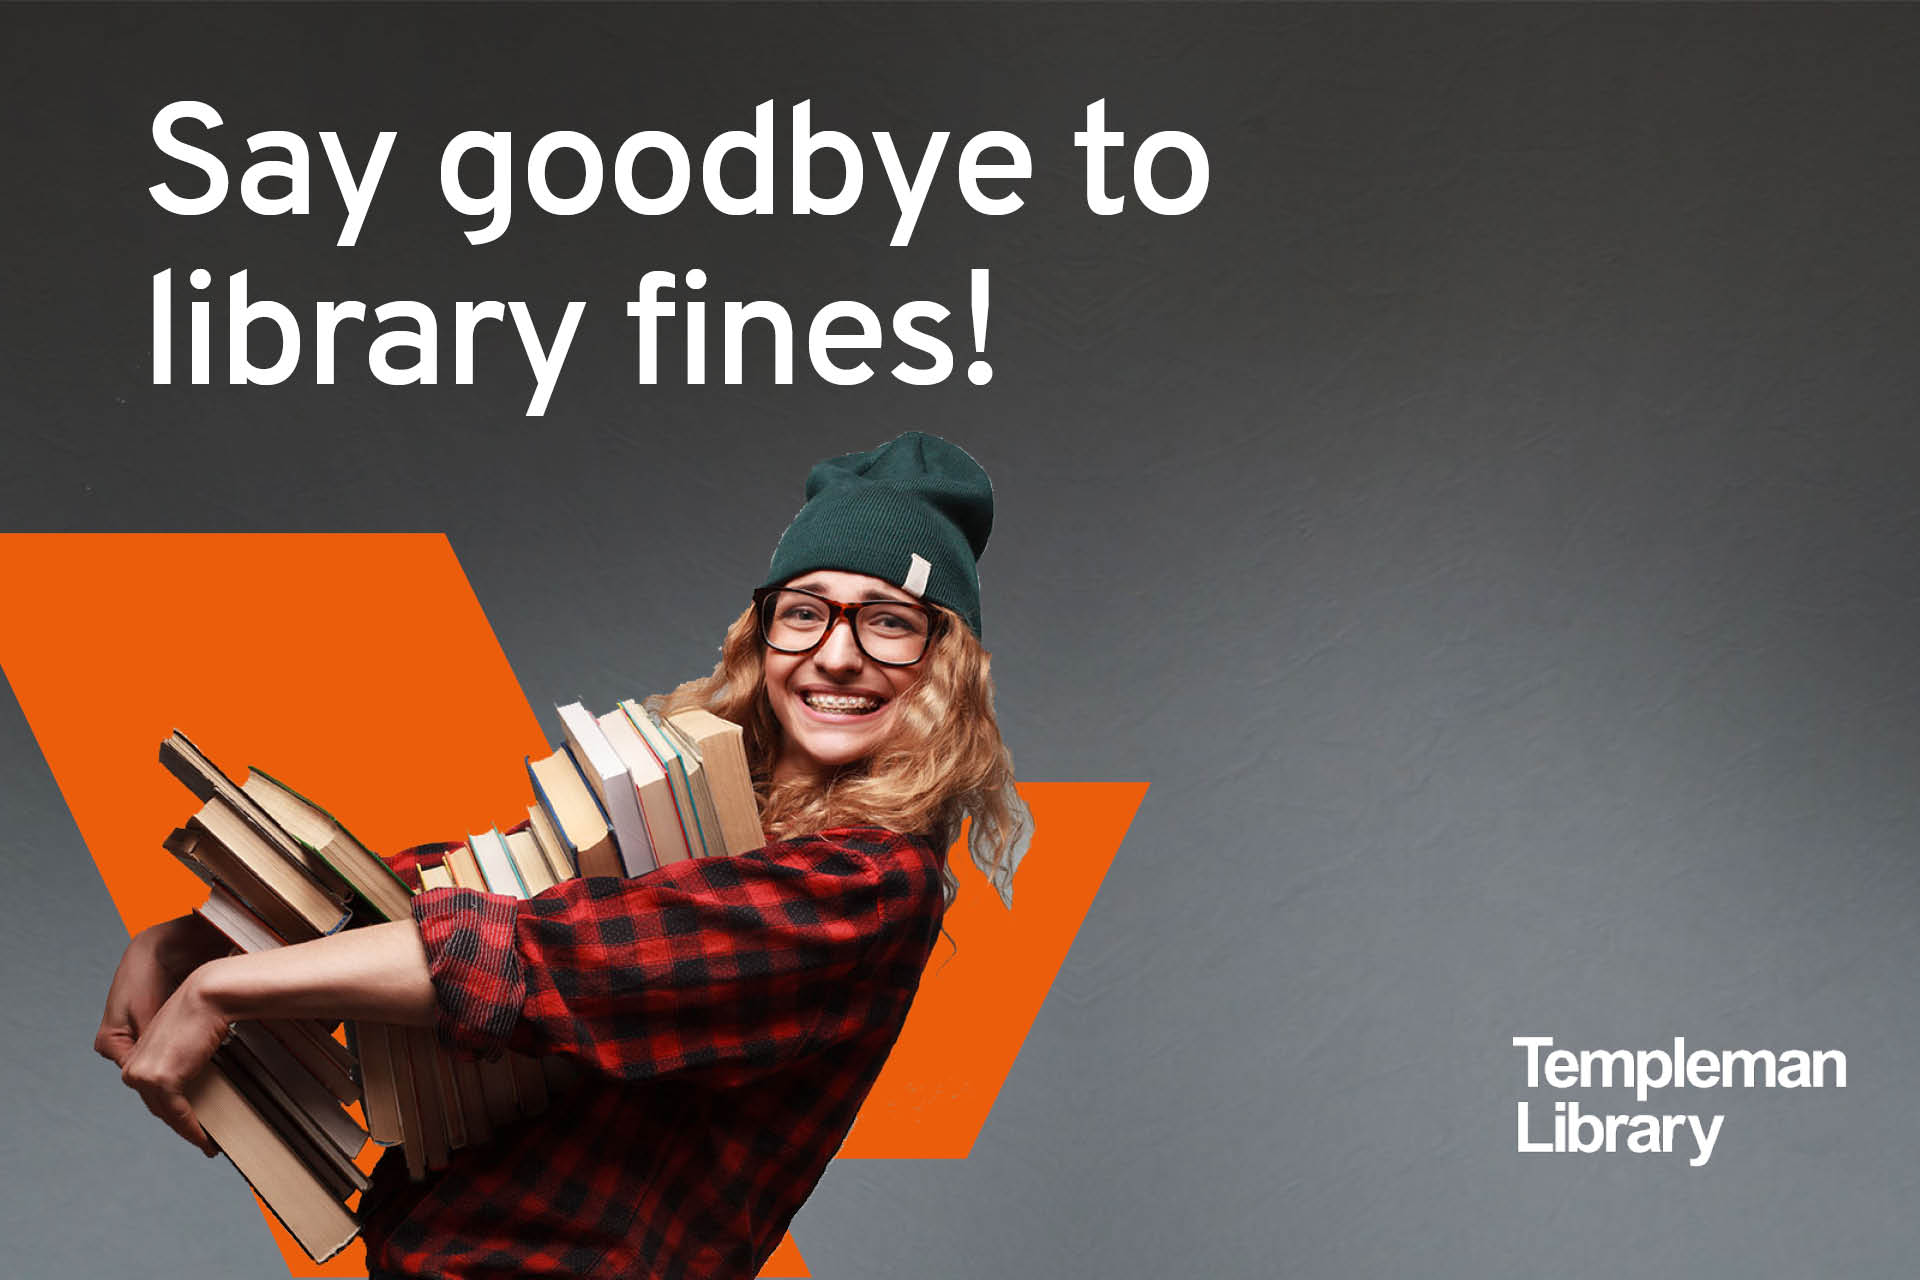 向图书馆罚款说再见吧!学生抱着一堆书